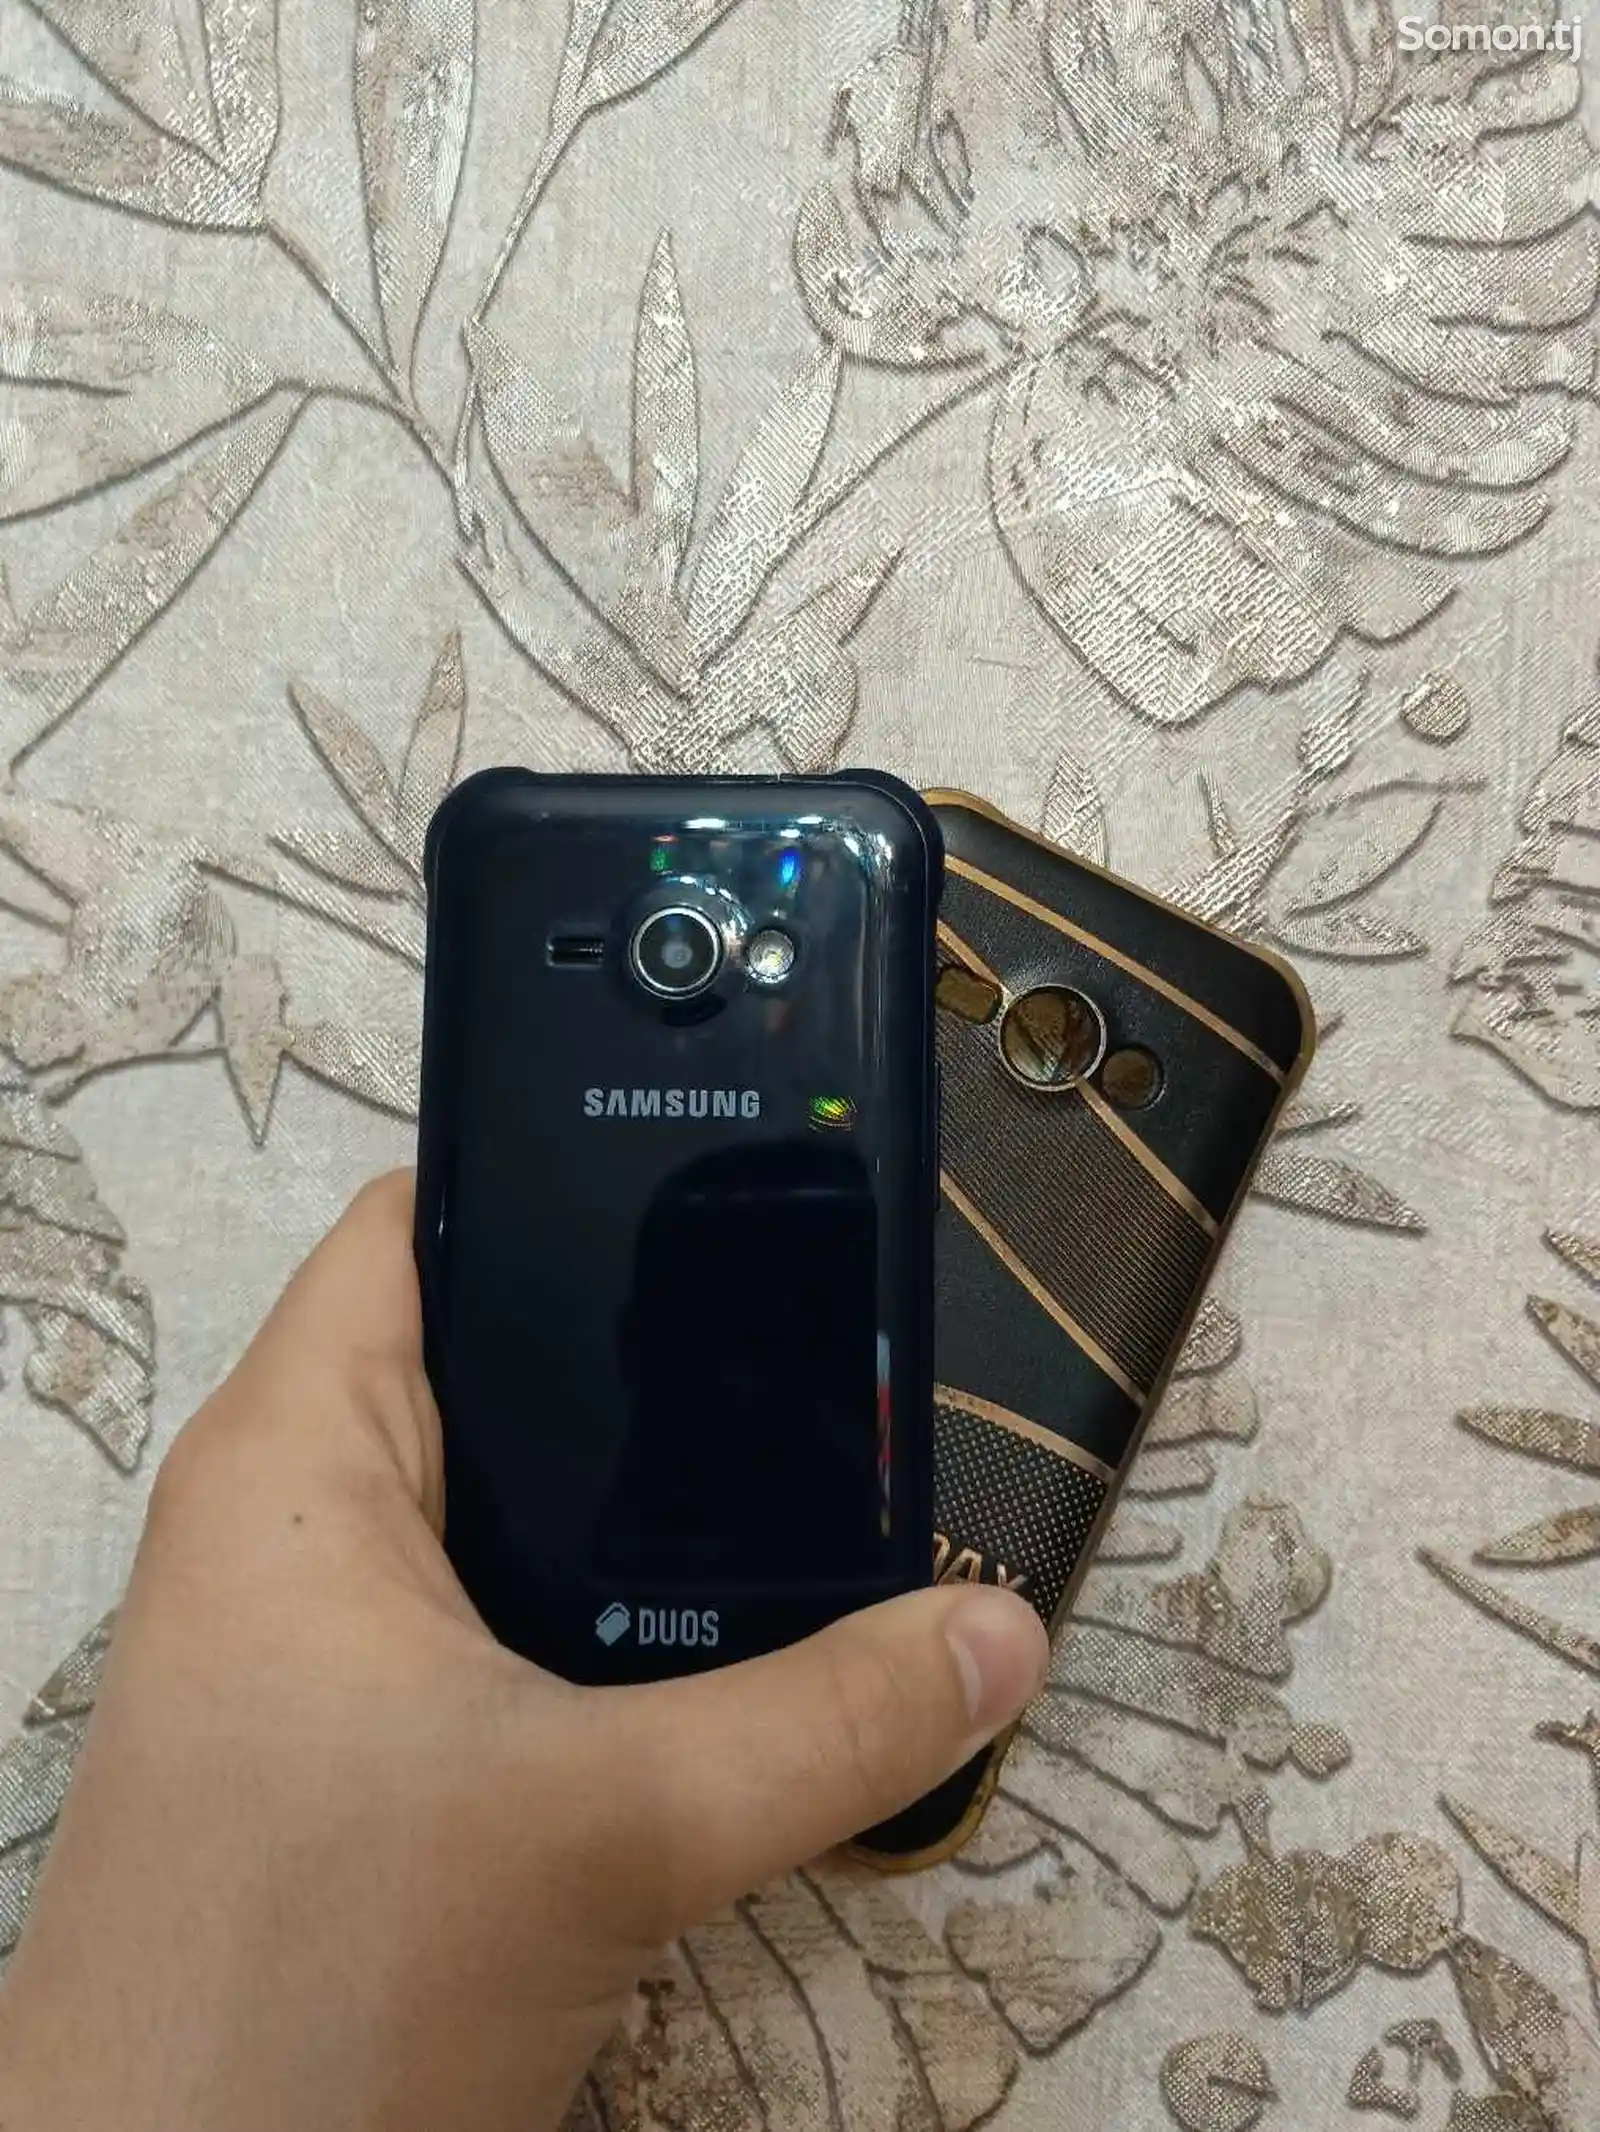 Samsung Galaxy J1 ace-2